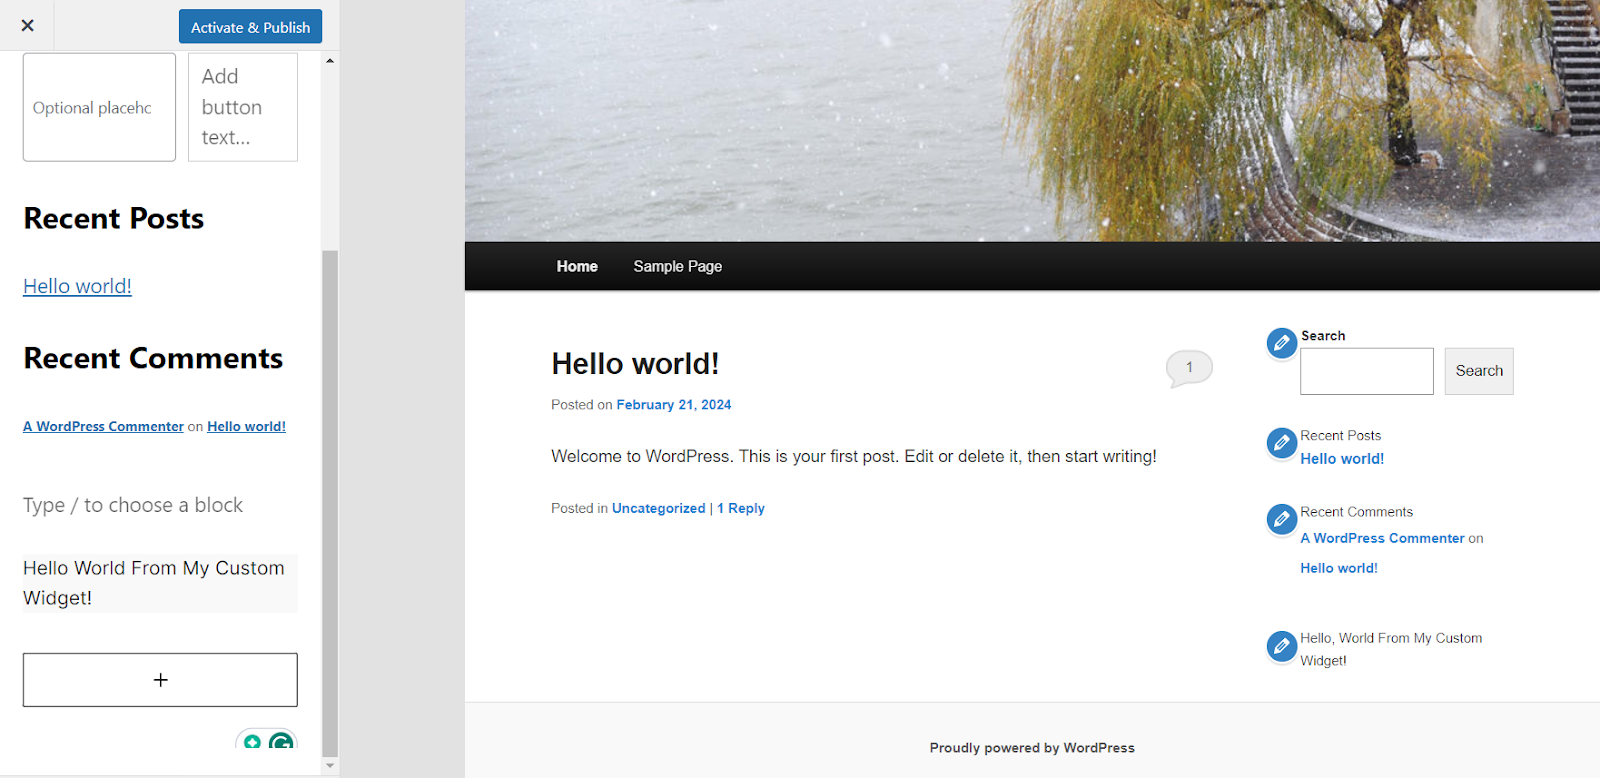 Screenshot der Landing Page der WordPress-Website. Auf der linken Seite der Seite gibt es ein Menü mit den letzten Beiträgen und Kommentaren sowie eine Schaltfläche Aktivieren & Veröffentlichen